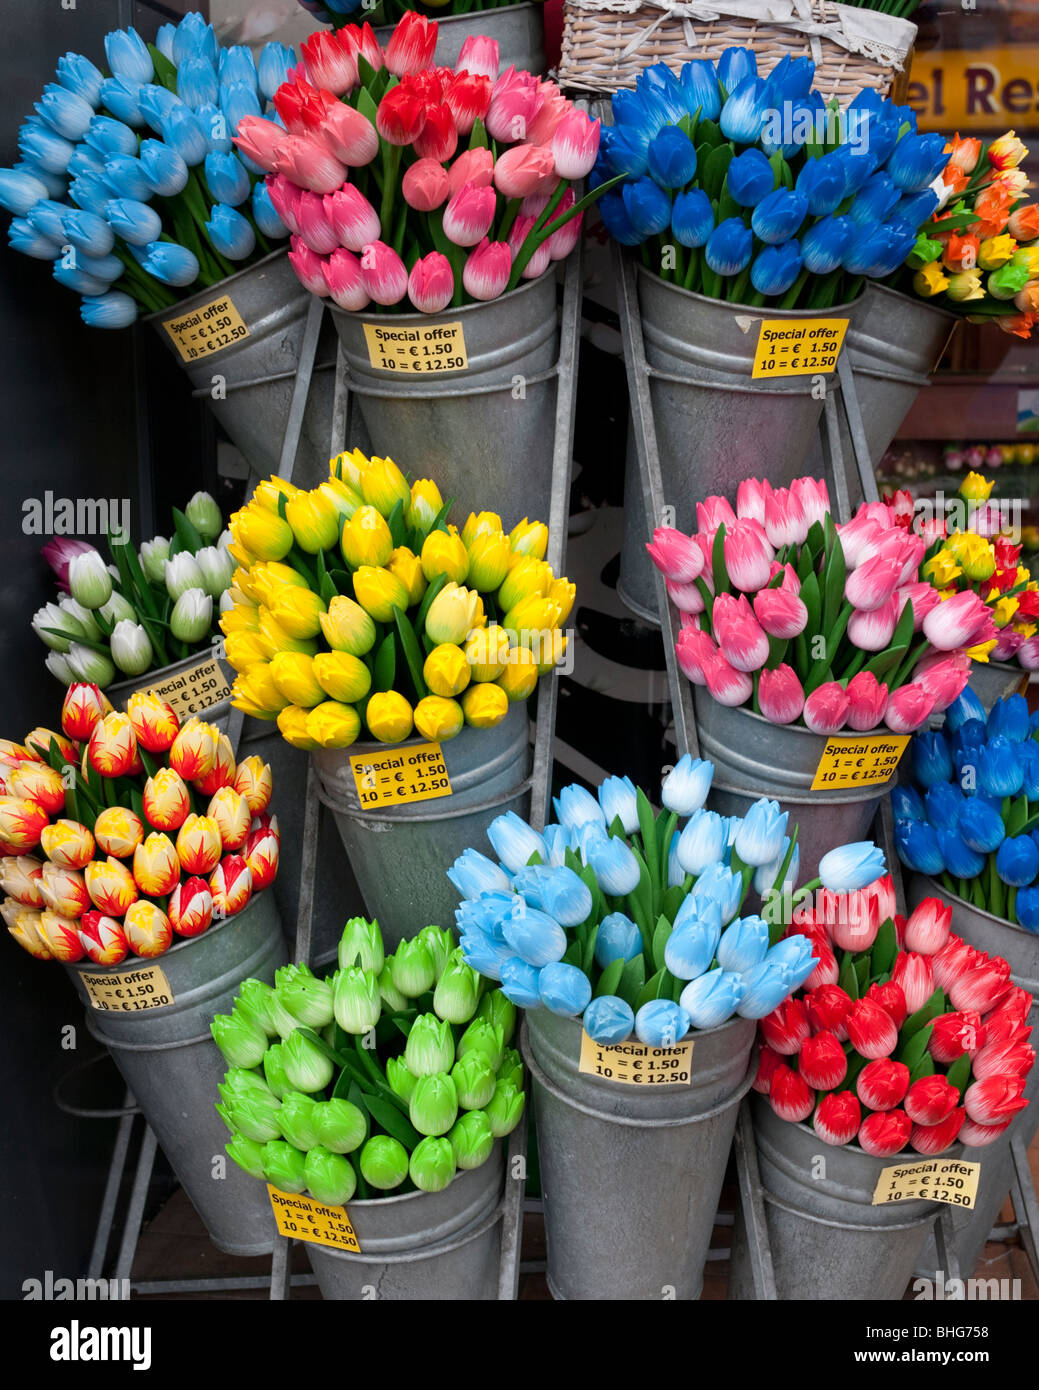 Dettaglio di molti in plastica colorata tulip fiori in un negozio di souvenir in Amsterdam Paesi Bassi Foto Stock